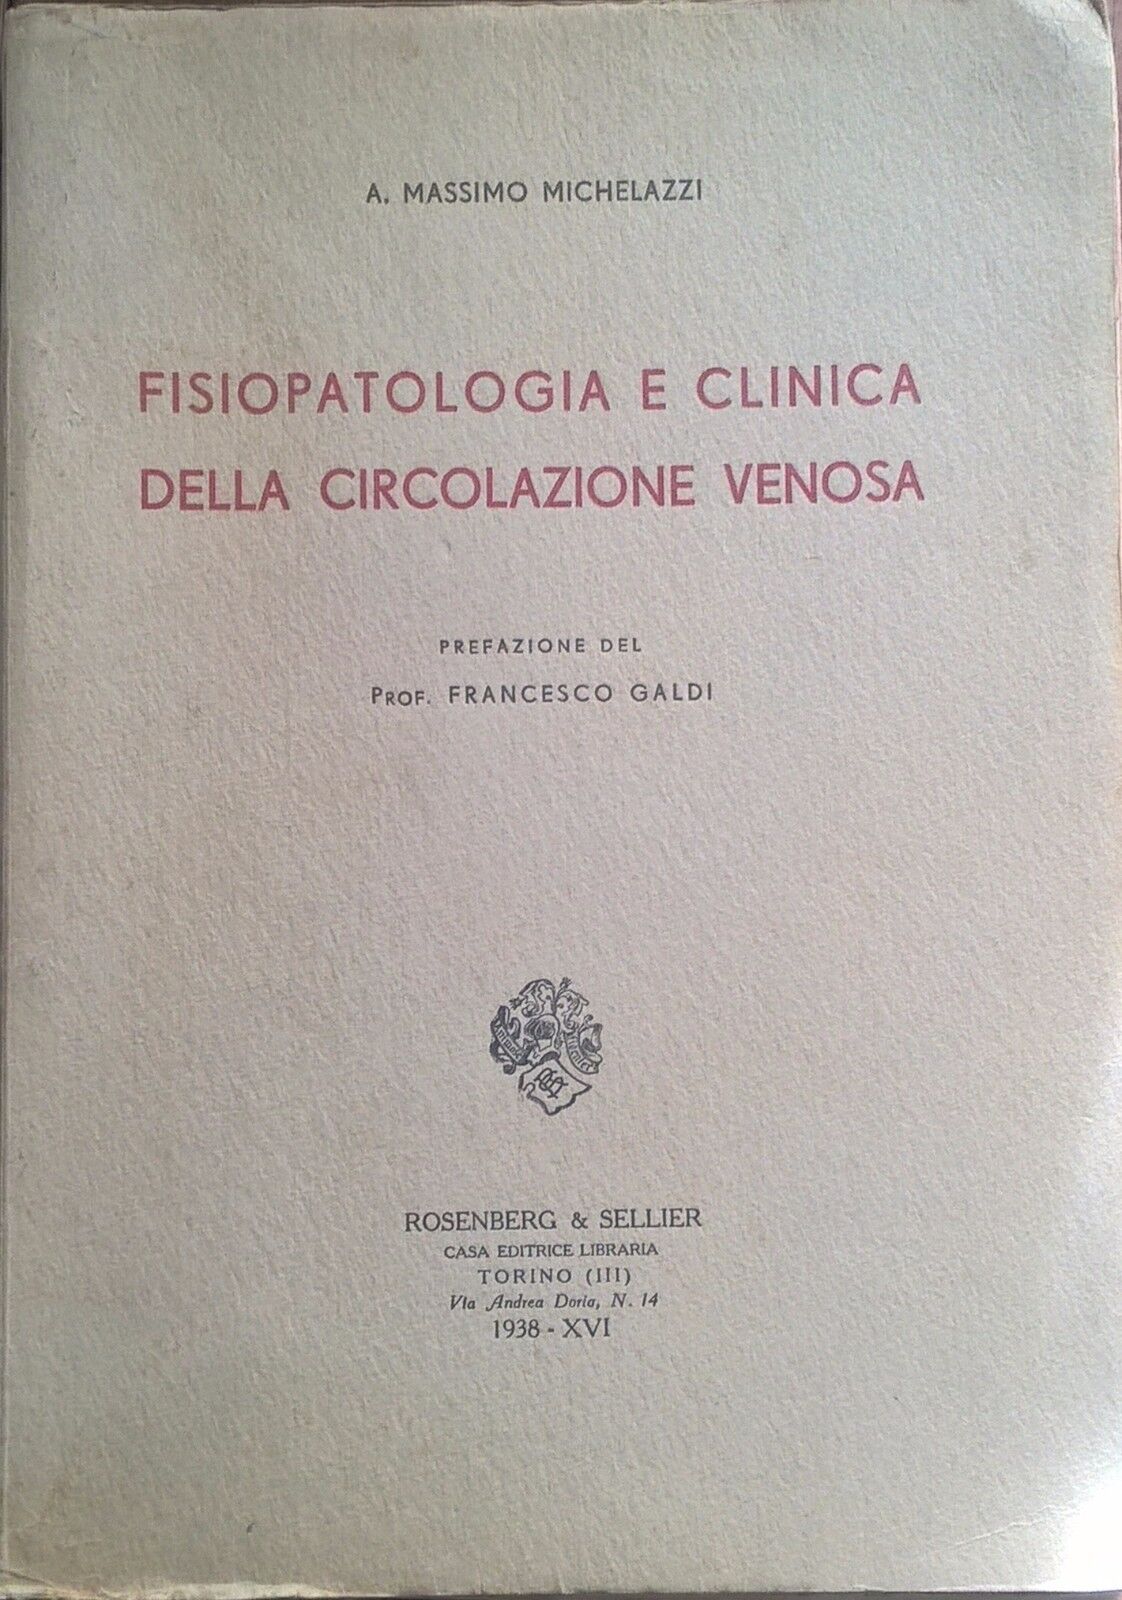 Fisiopatologia e clinica della circolazione venosa - Michelazzi (1938) Ca